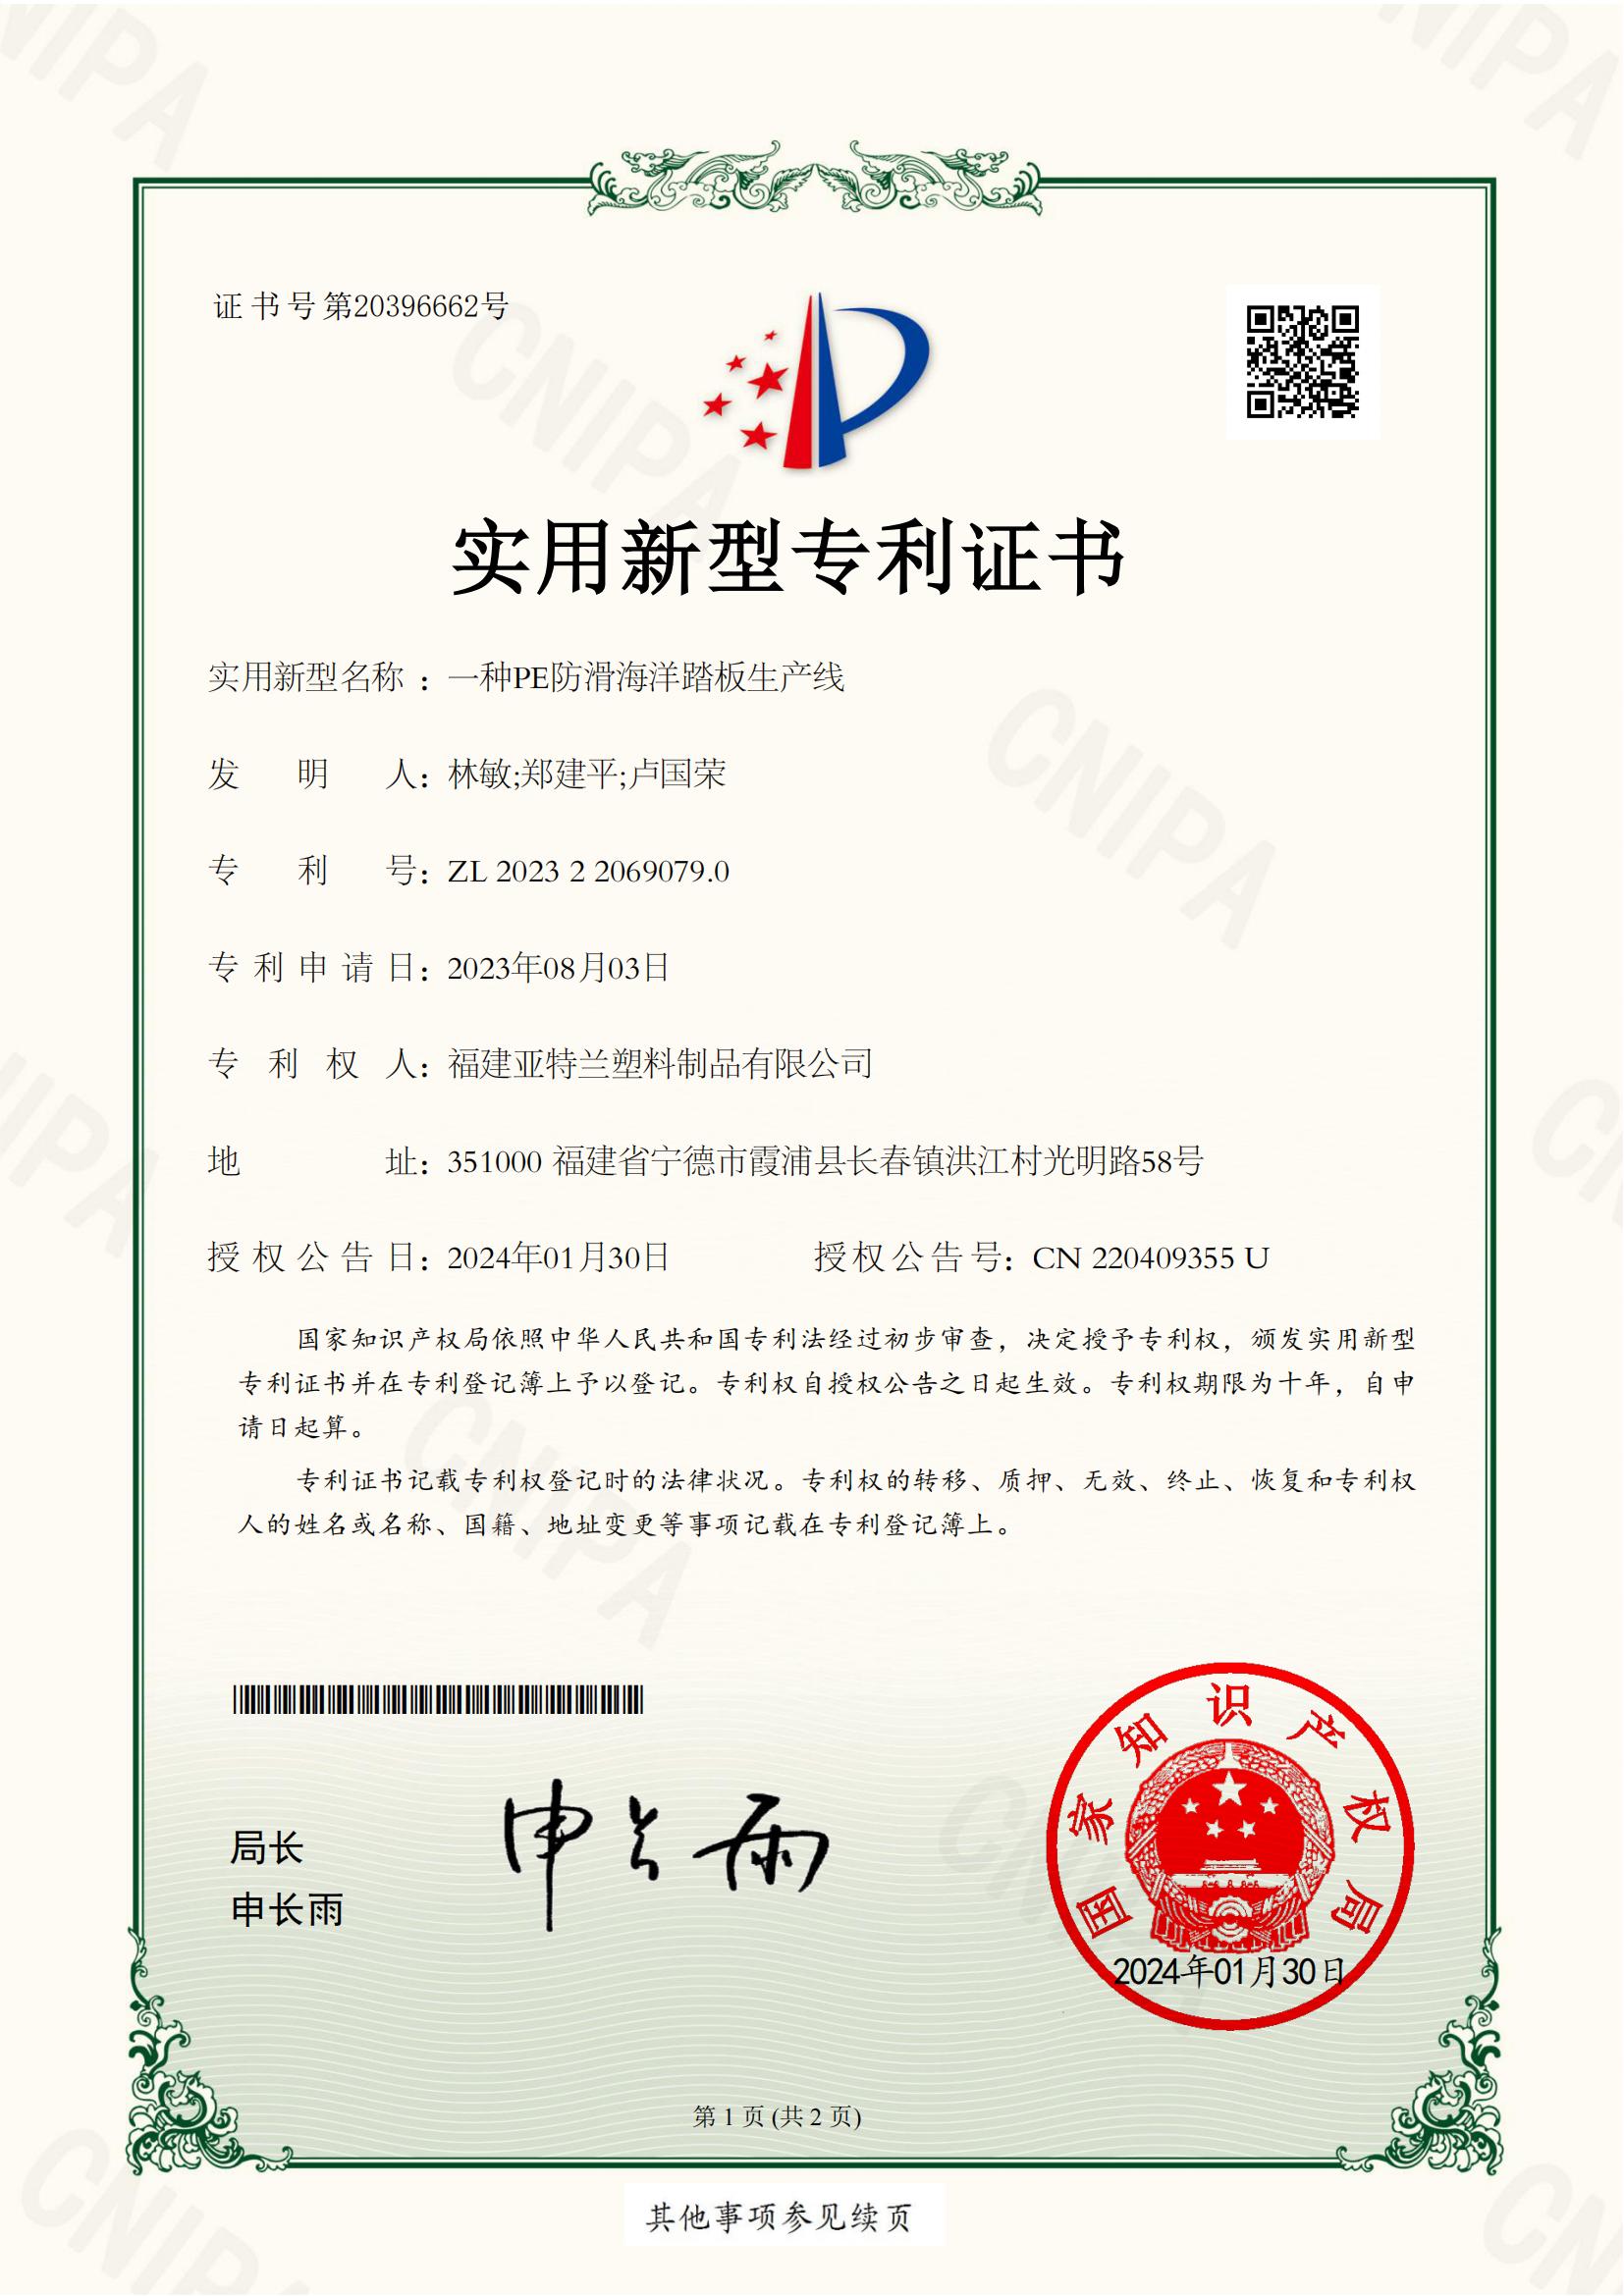 实用新型专利证书 一种PE防滑海洋踏板生产线 2023220690790 福建亚特兰塑料制品有限公司(1)_00